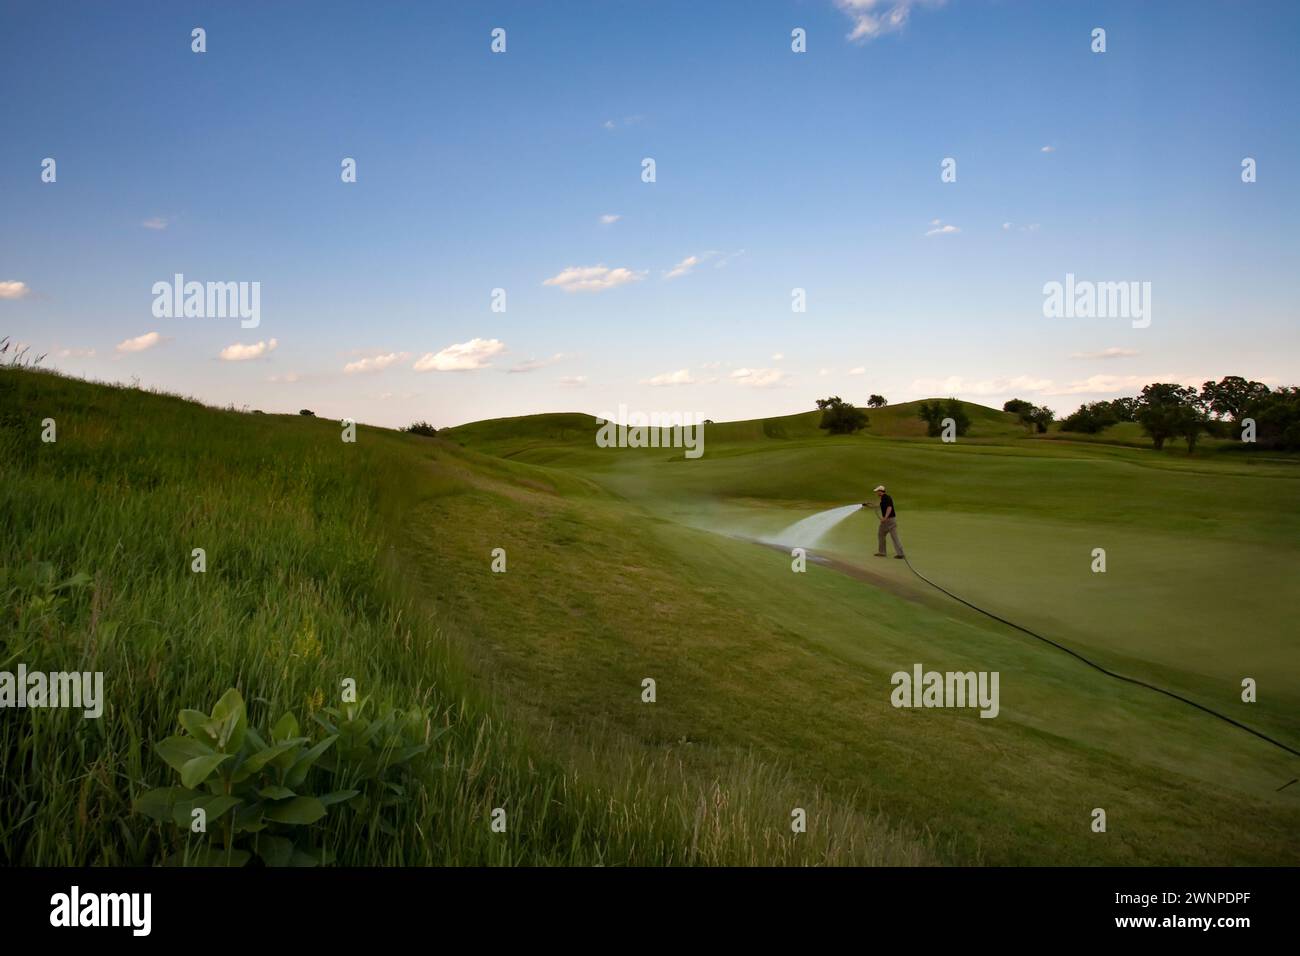 Il campo da golf Erin Hills, un campo ondulato e aspro di Erin, Wisconsin, ospita gli US Open 2017. Inviare richieste di licenza a legal@toddb Foto Stock